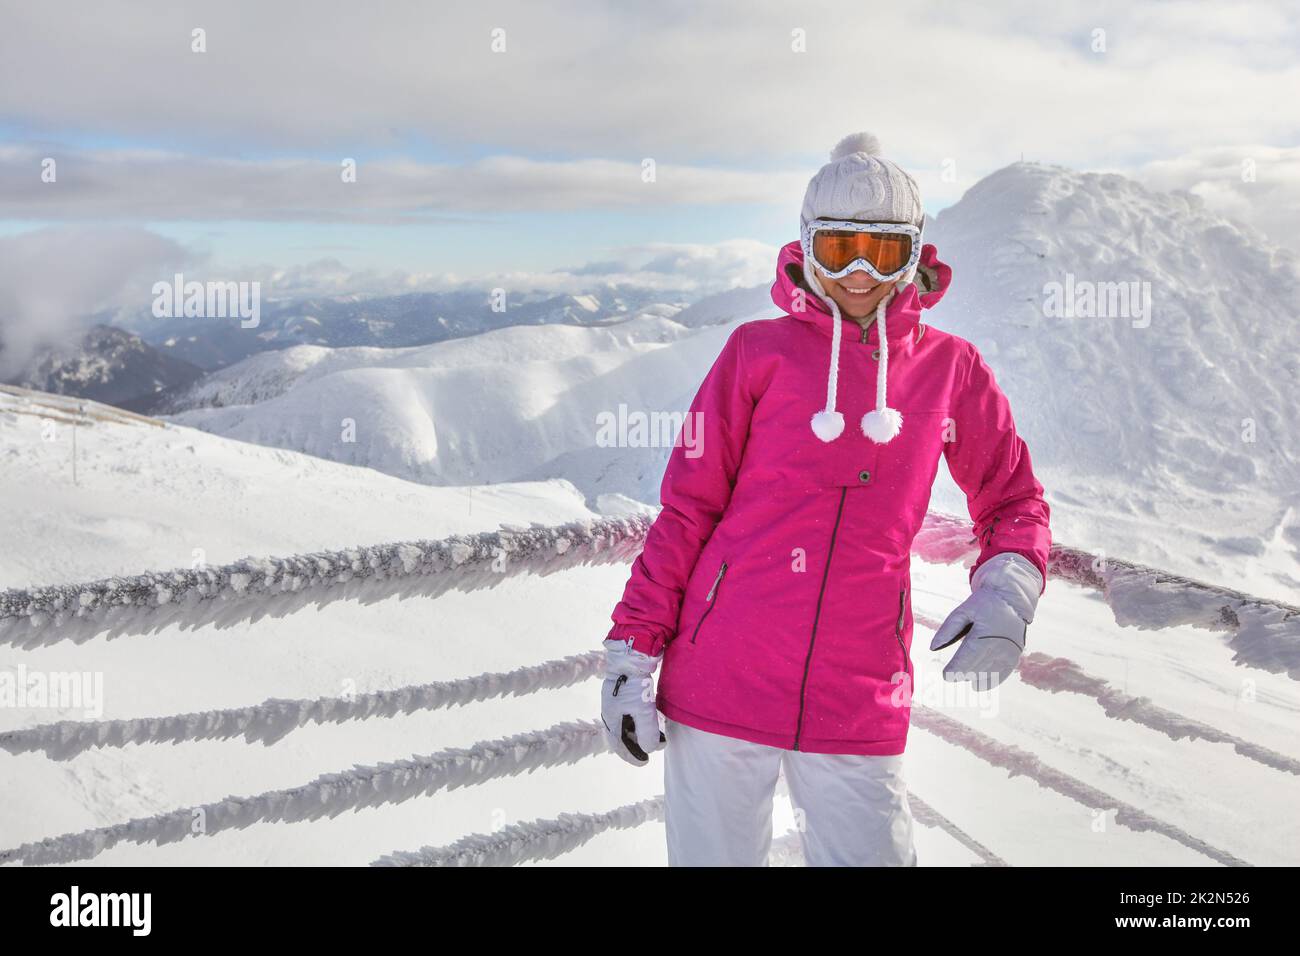 Junge Frau in rosa Jacke, Tragen von skibrille, lehnte sich auf Schnee Zaun, lächelnd, weiße Berge im Hintergrund. Stockfoto